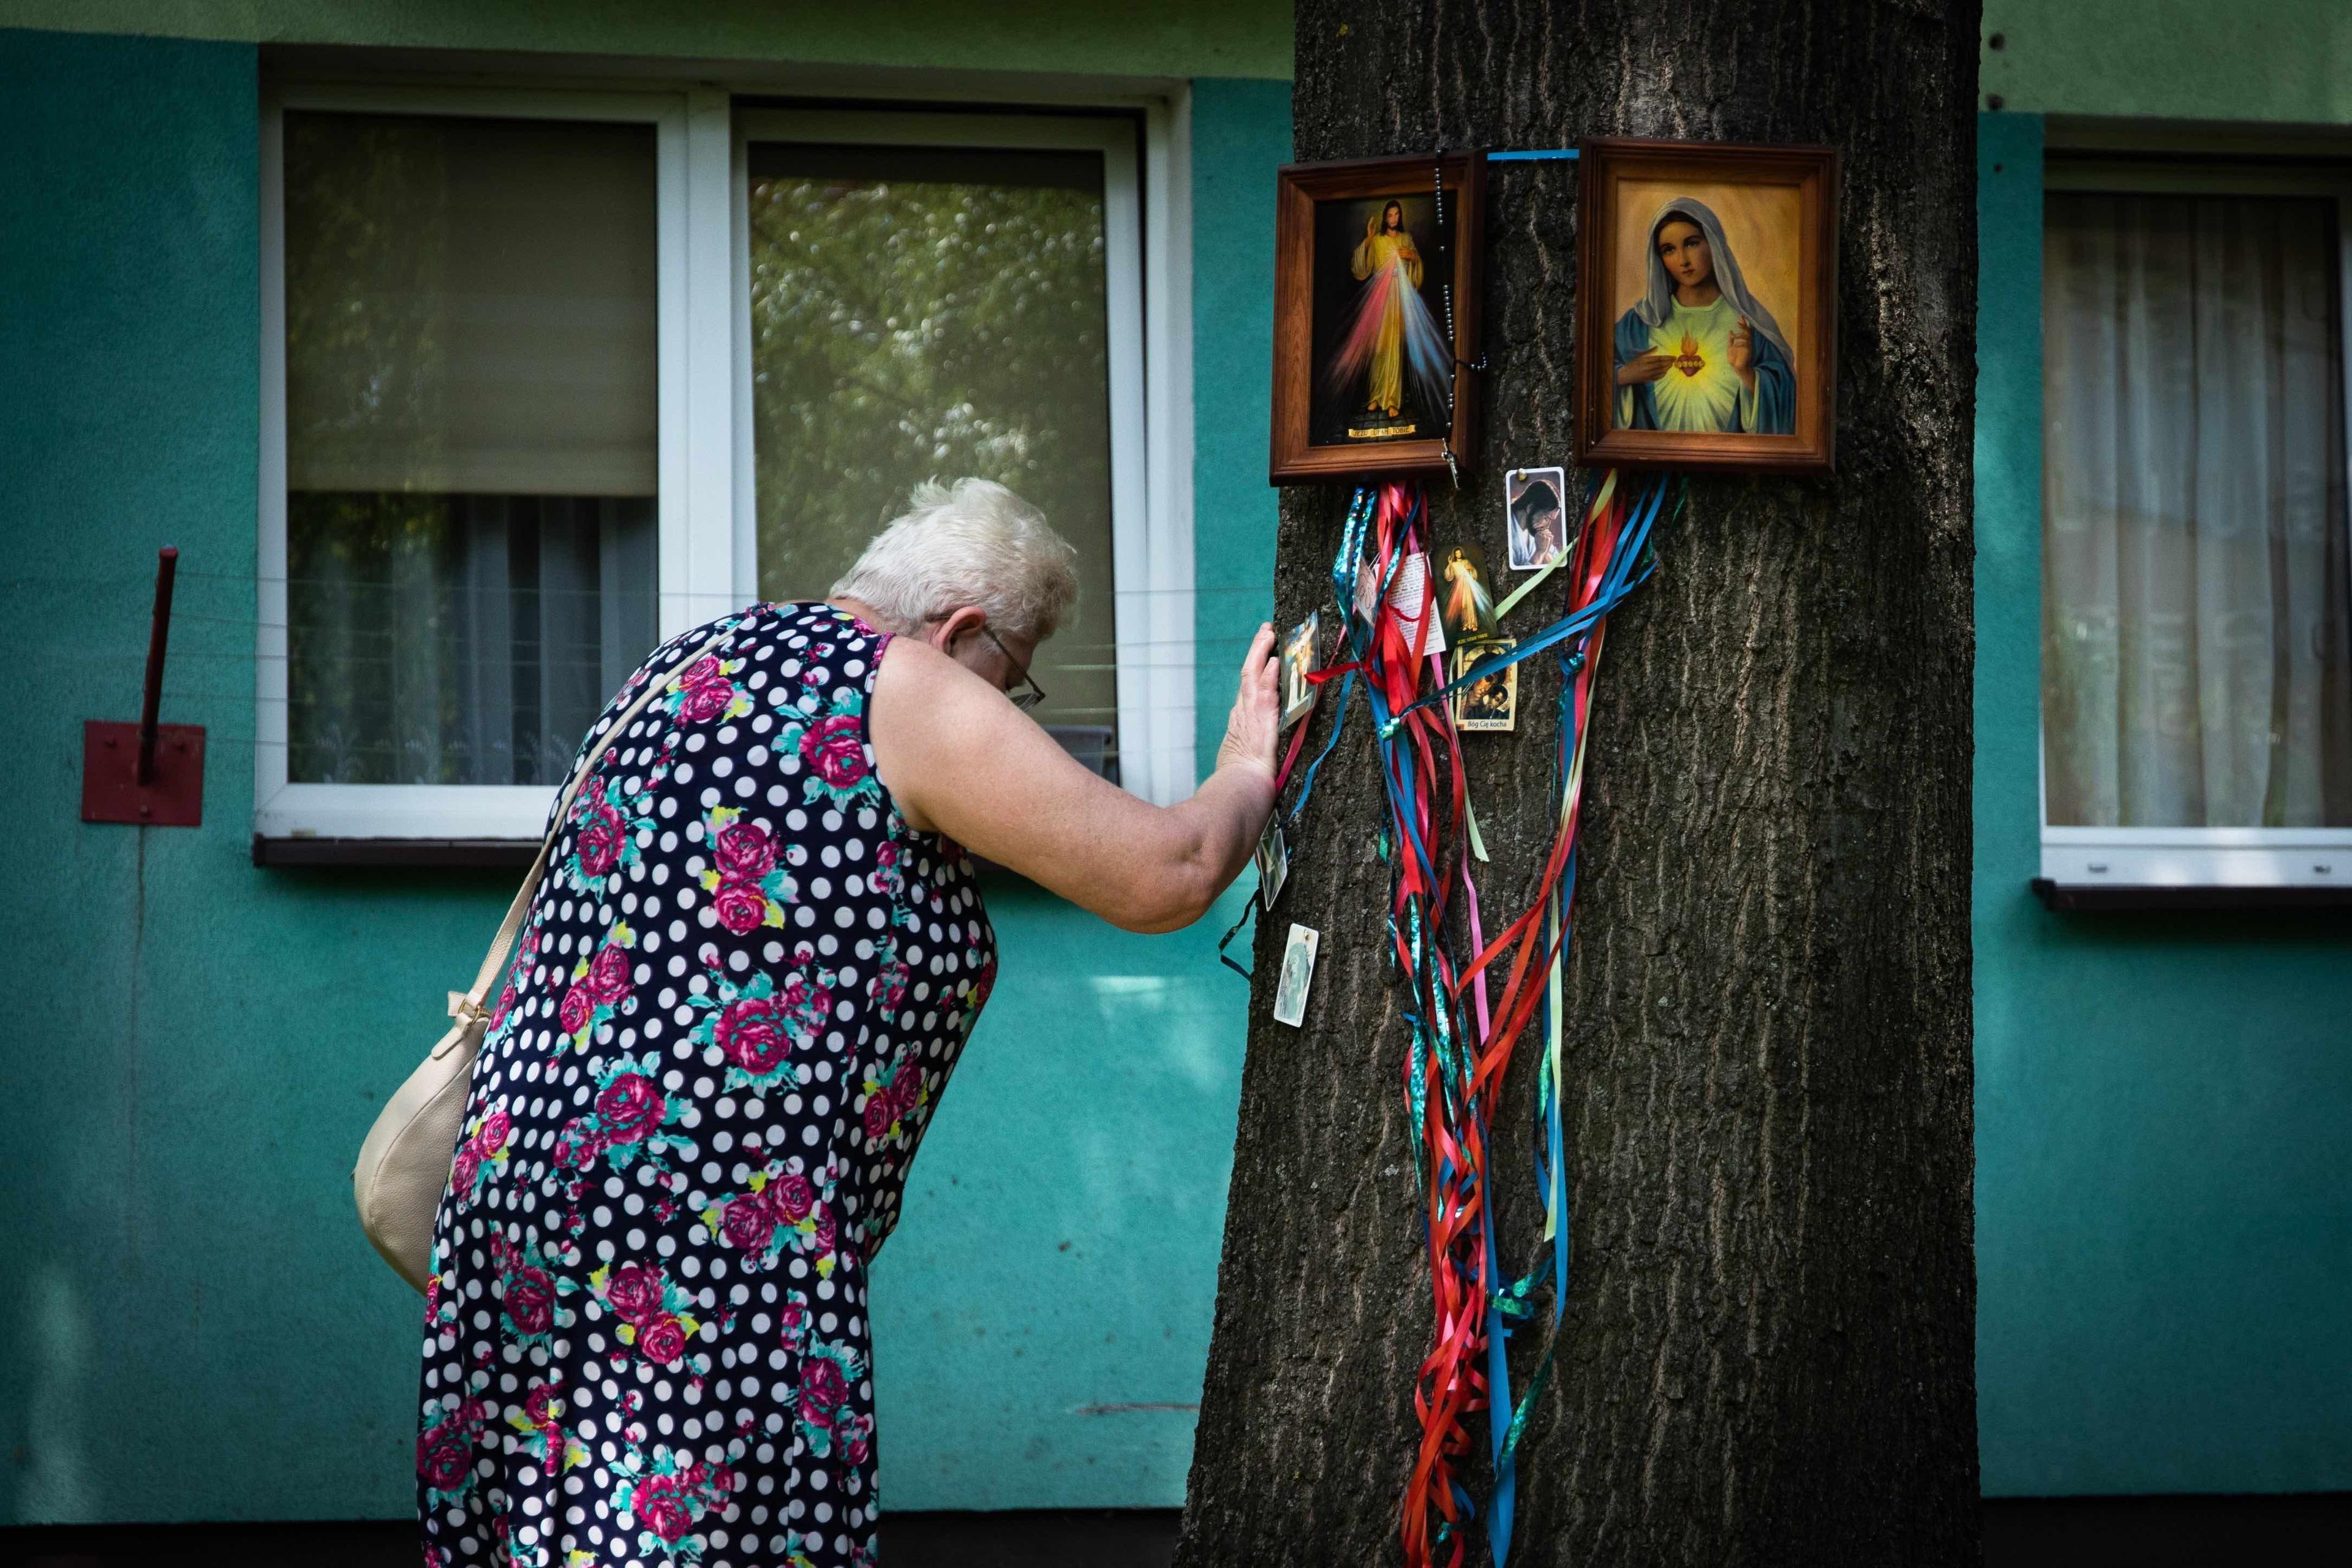 Kobieta opiera rękę o drzewo, na którym wiszą obrazki święte i wstążki. W tle widać okna bloku mieszkalnego.